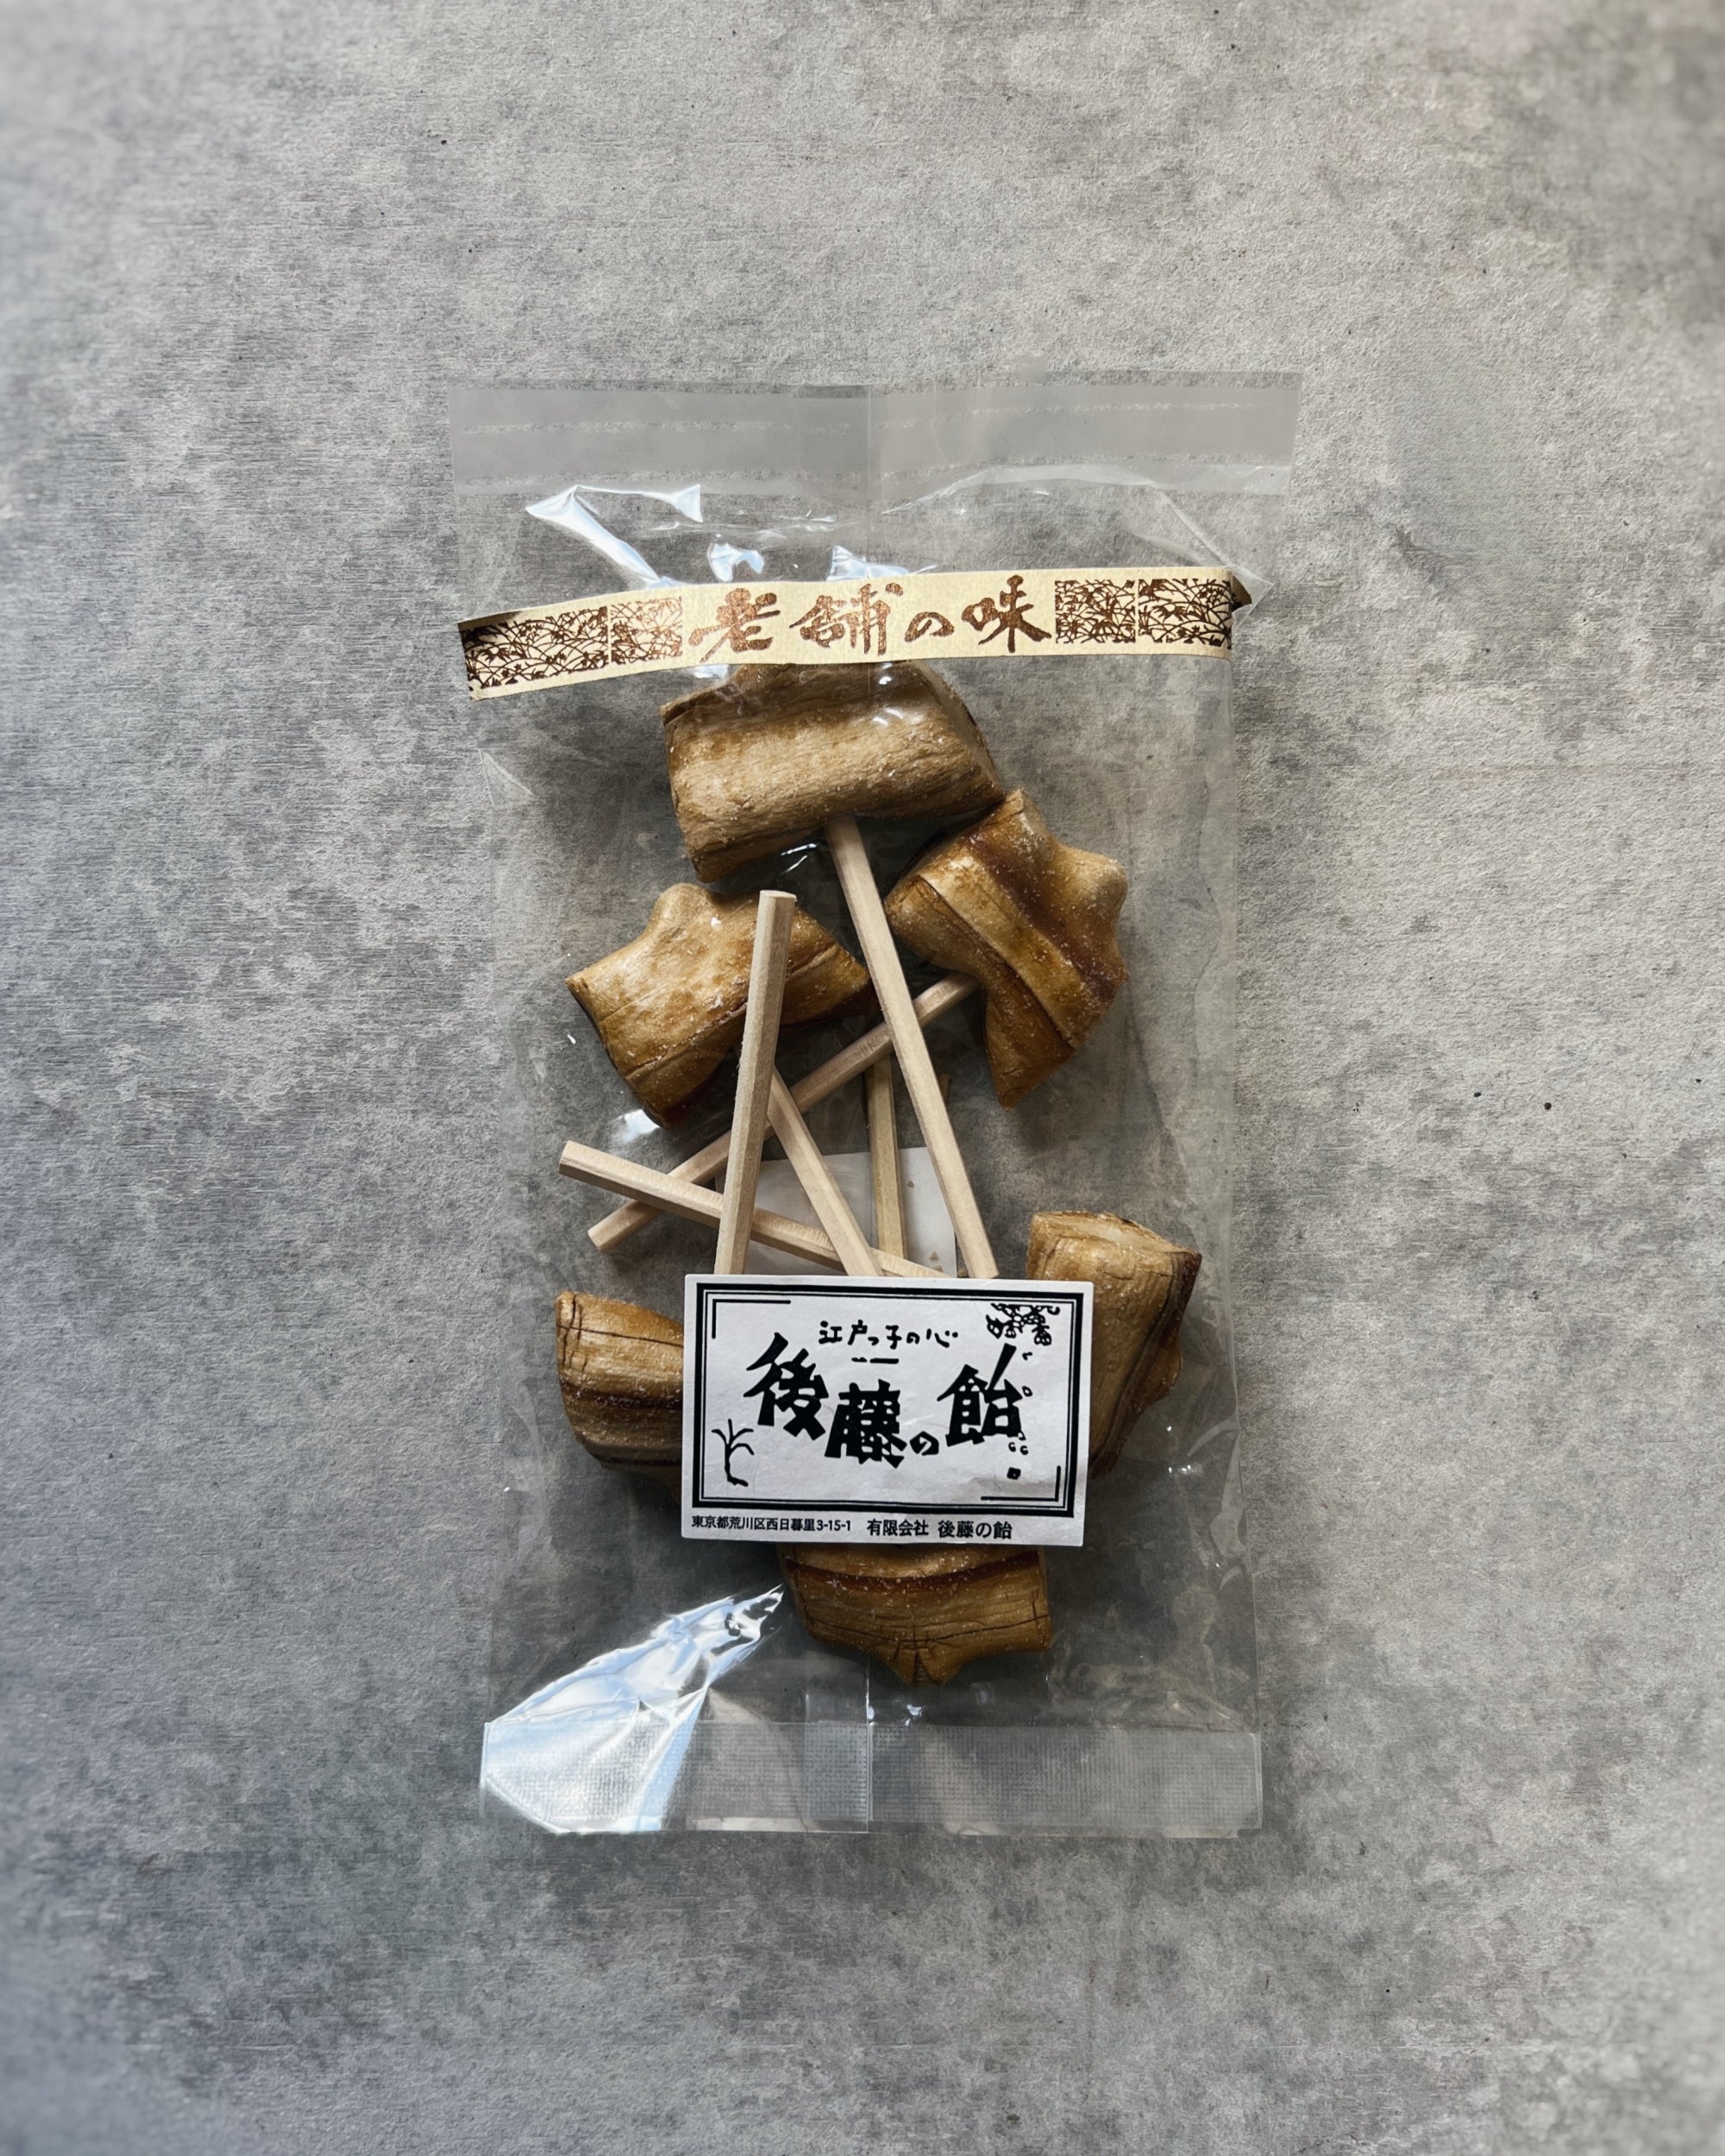 goto : japanese brown sugar lollipops